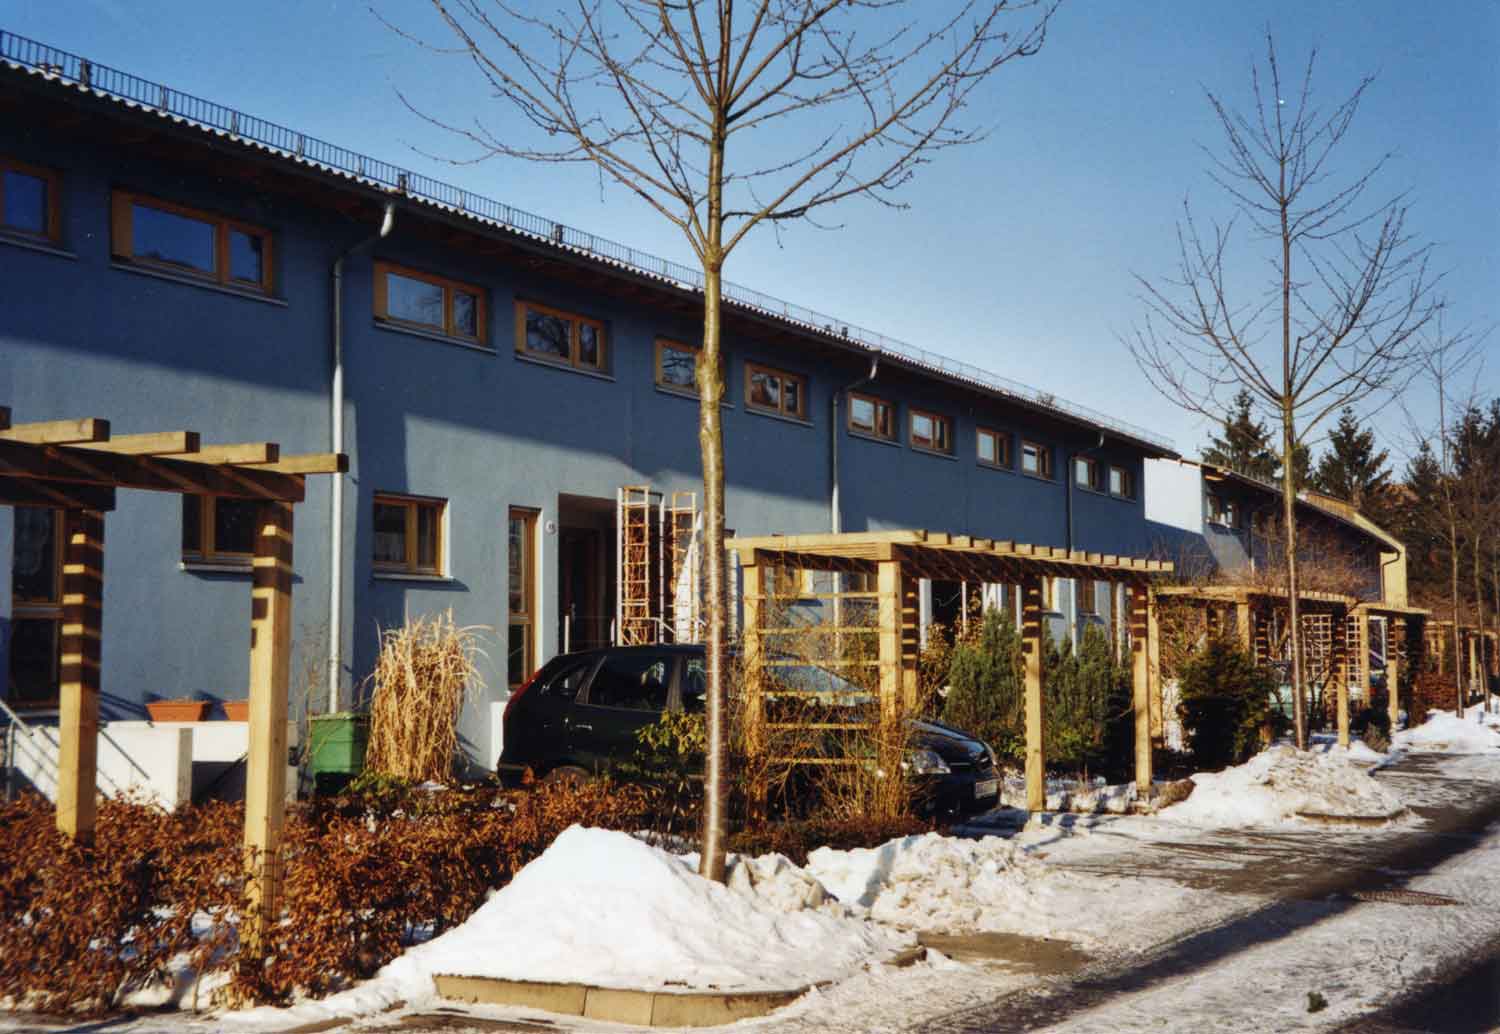 Foto, farbig: Drei Reihenhäuser mit Vorgärten, kahlen Straßenbäumen und Schnee auf dem Gehweg unter blauem Himmel.